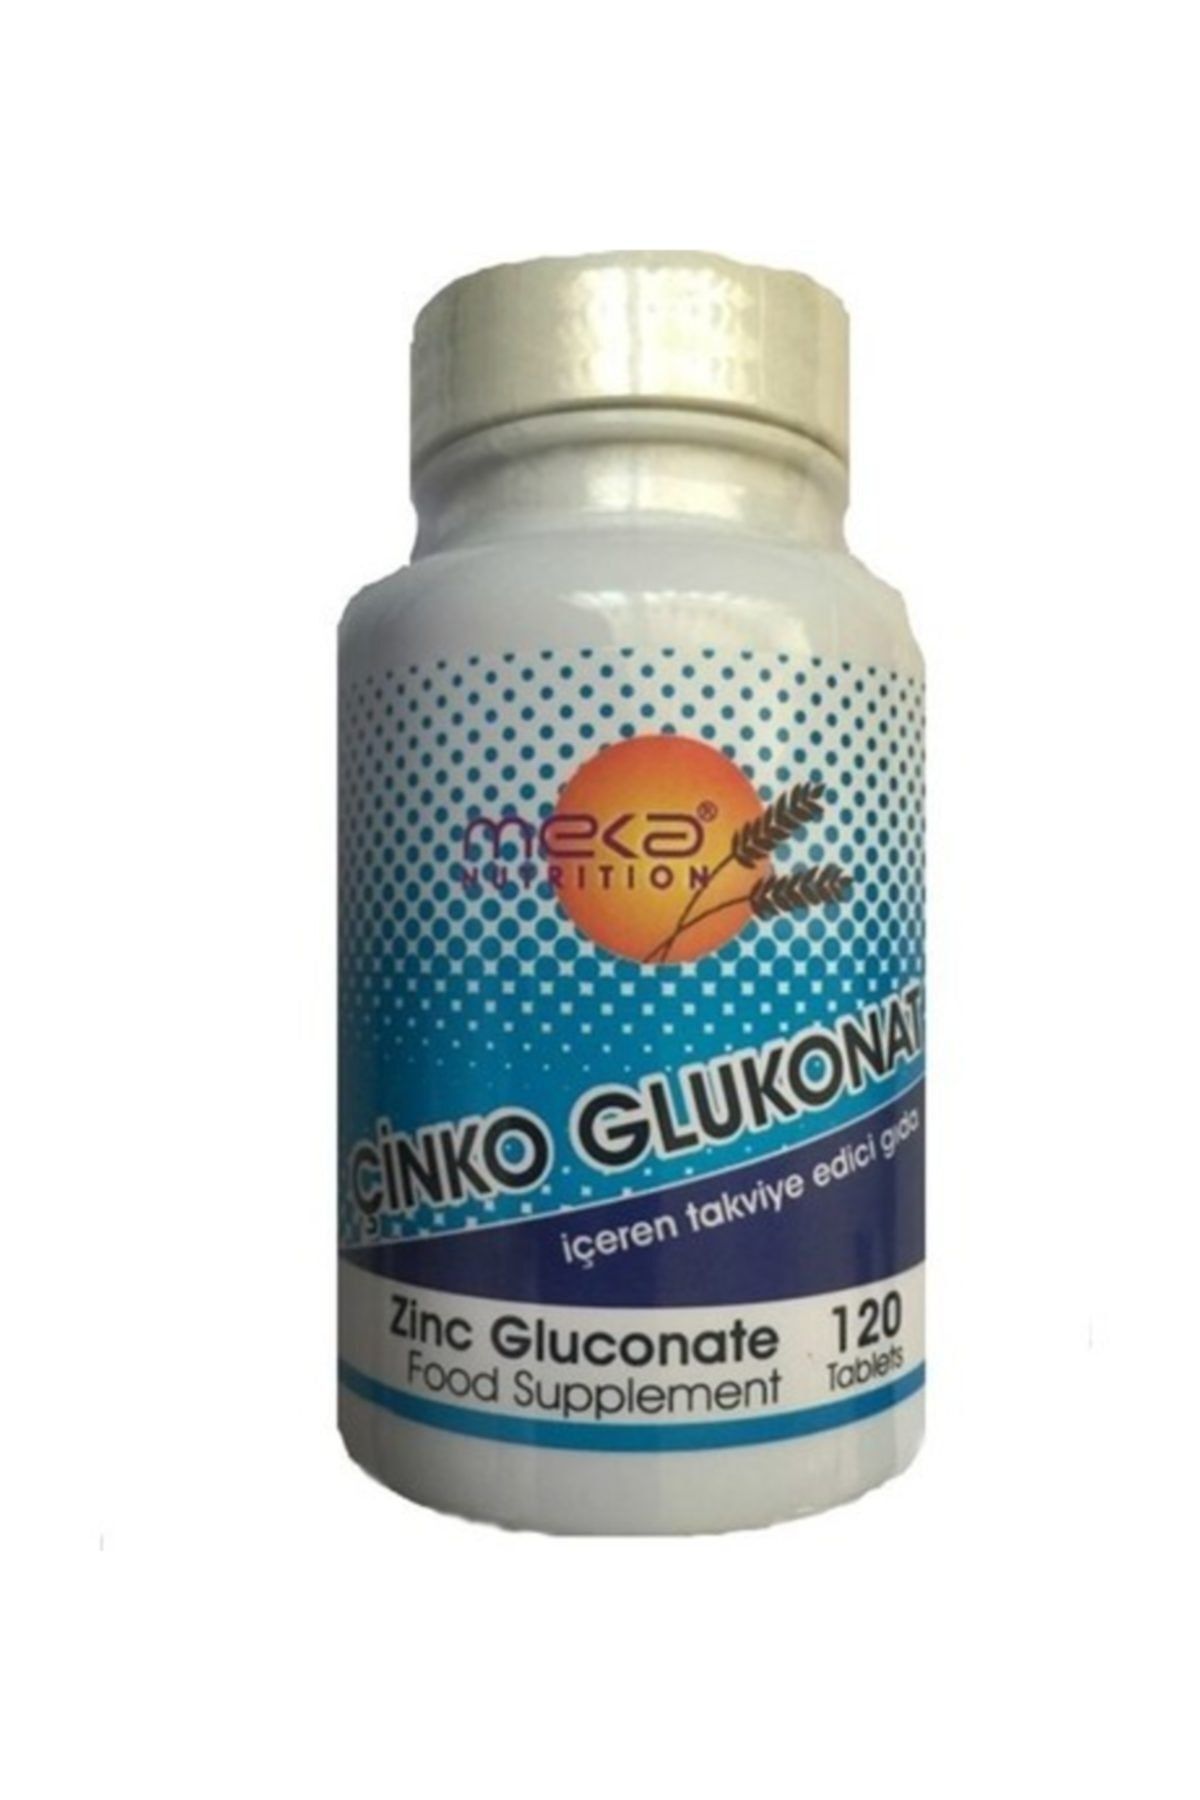 Meka Nutrition Çinko Glukonat 120 Tablet AND.VİT.133-2